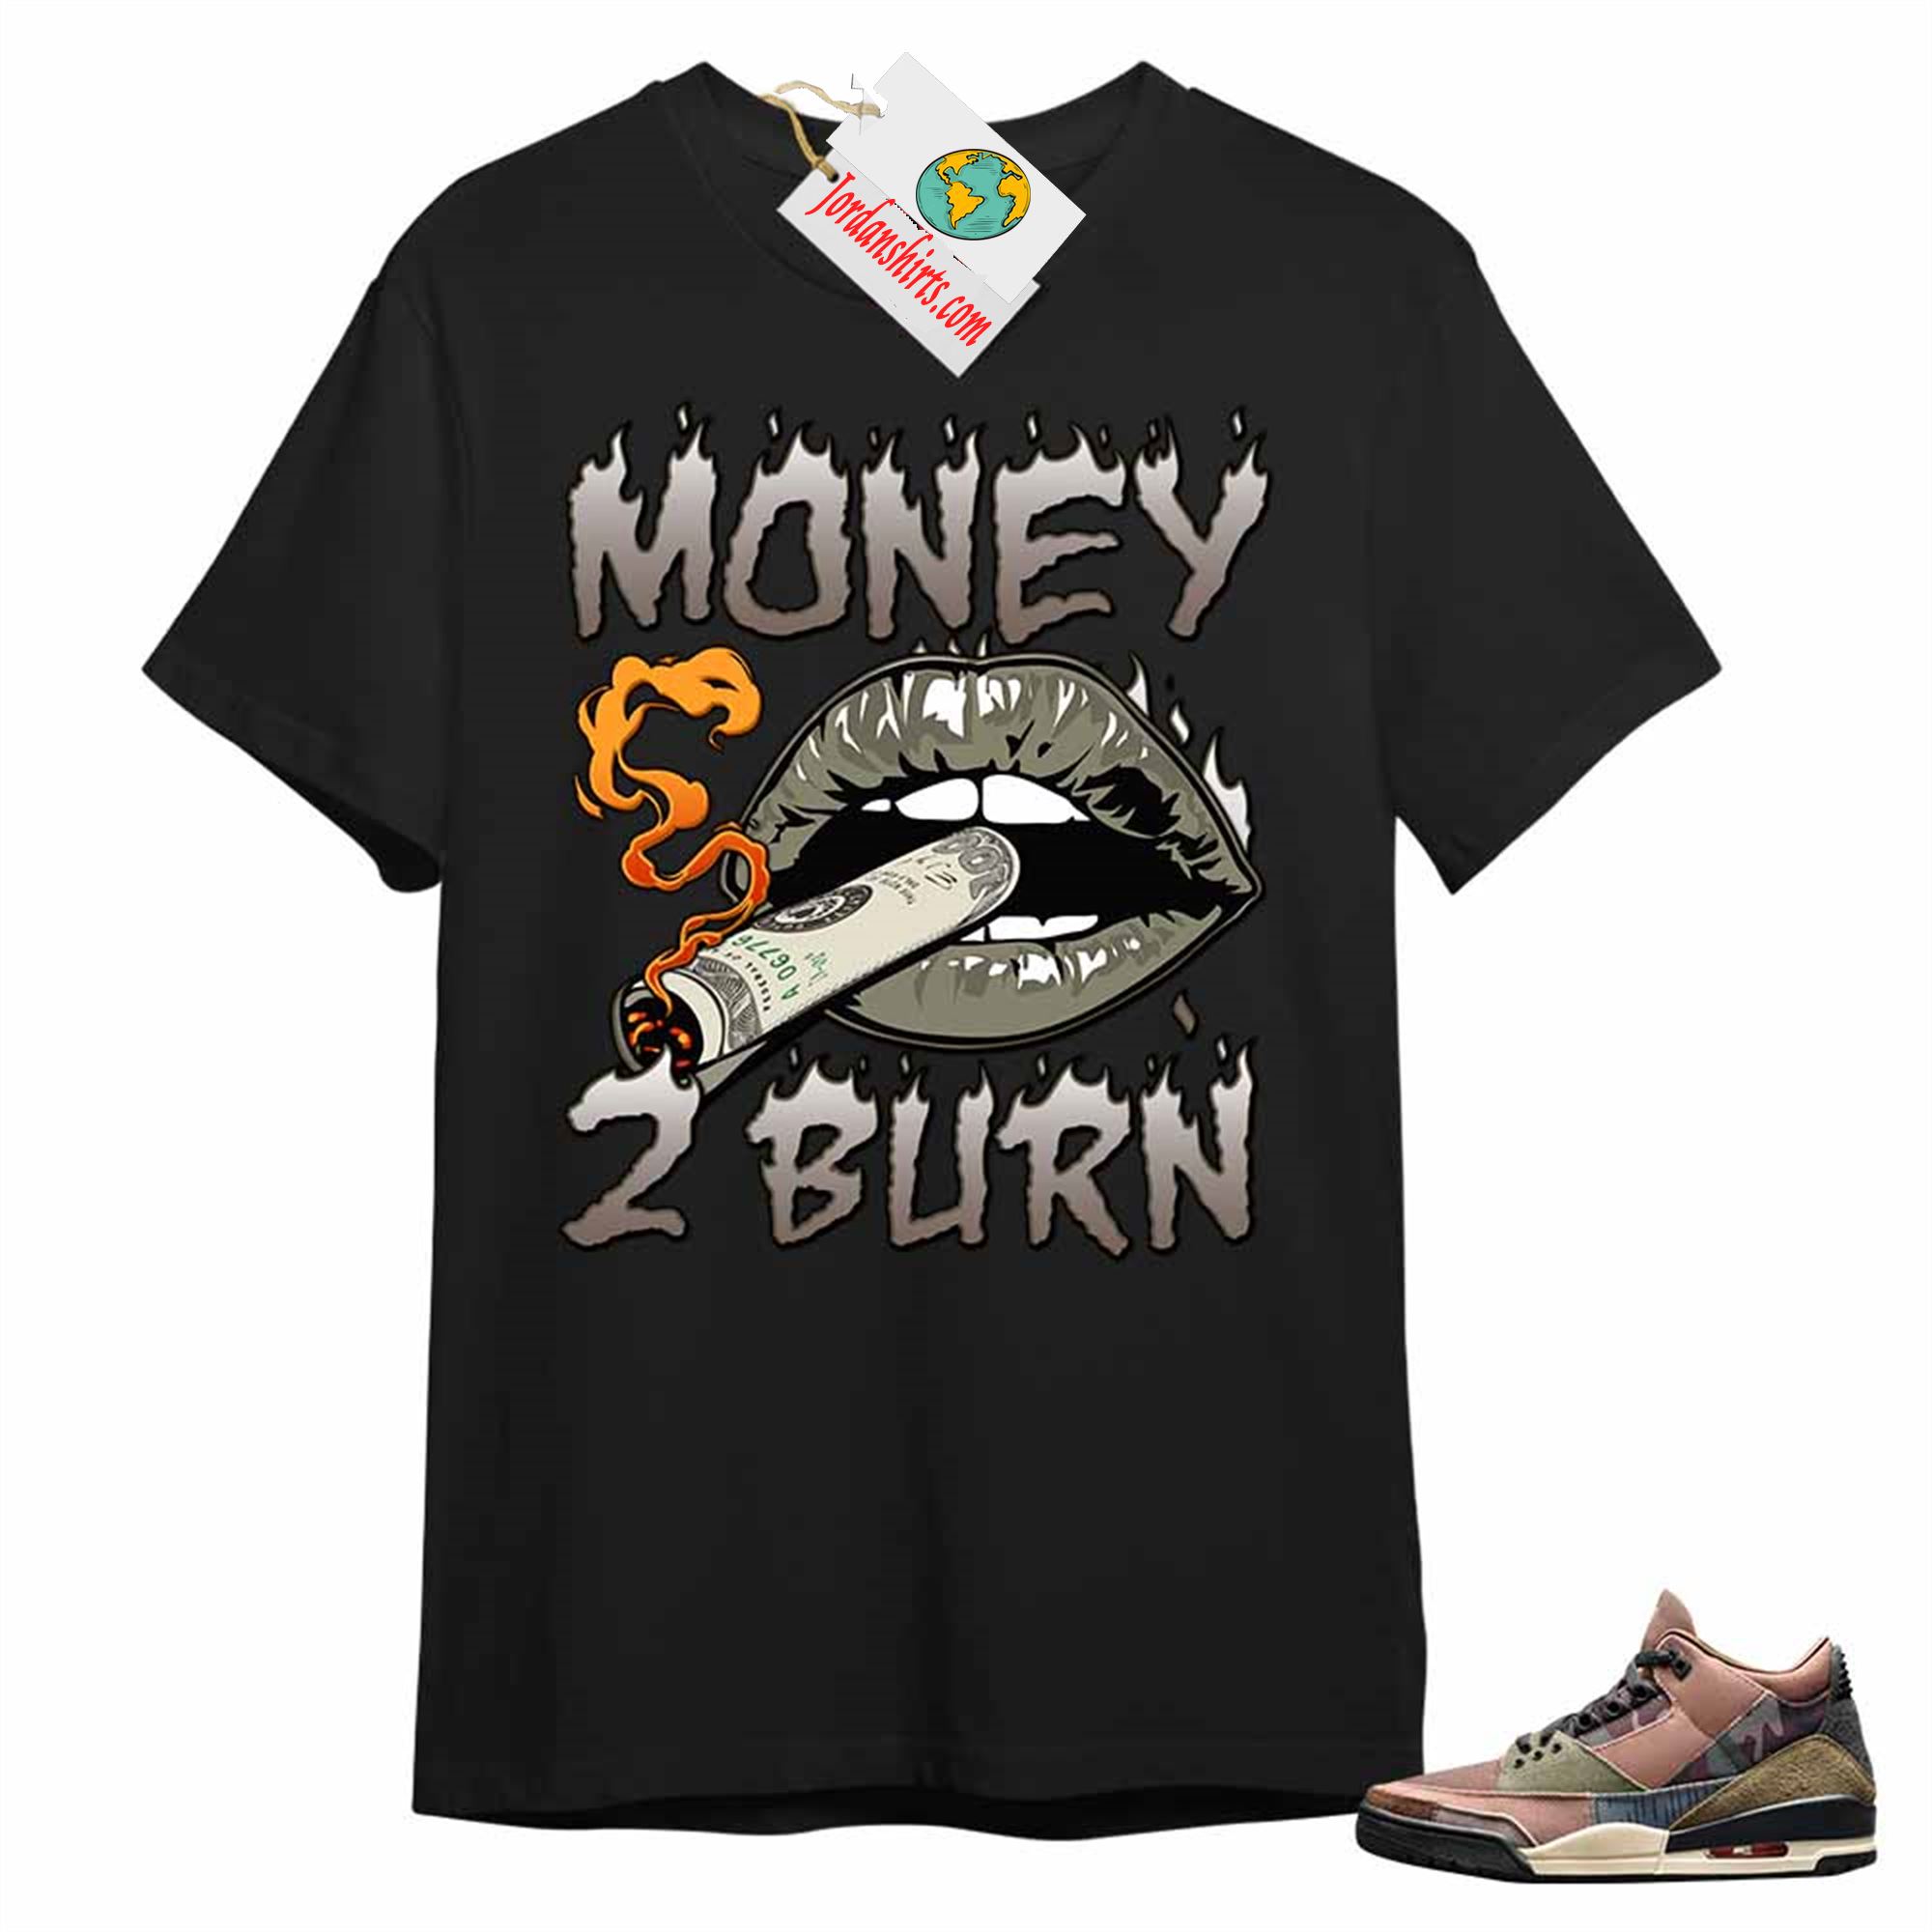 Jordan 3 Shirt, Money To Burn Black T-shirt Air Jordan 3 Camo 3s Plus Size Up To 5xl